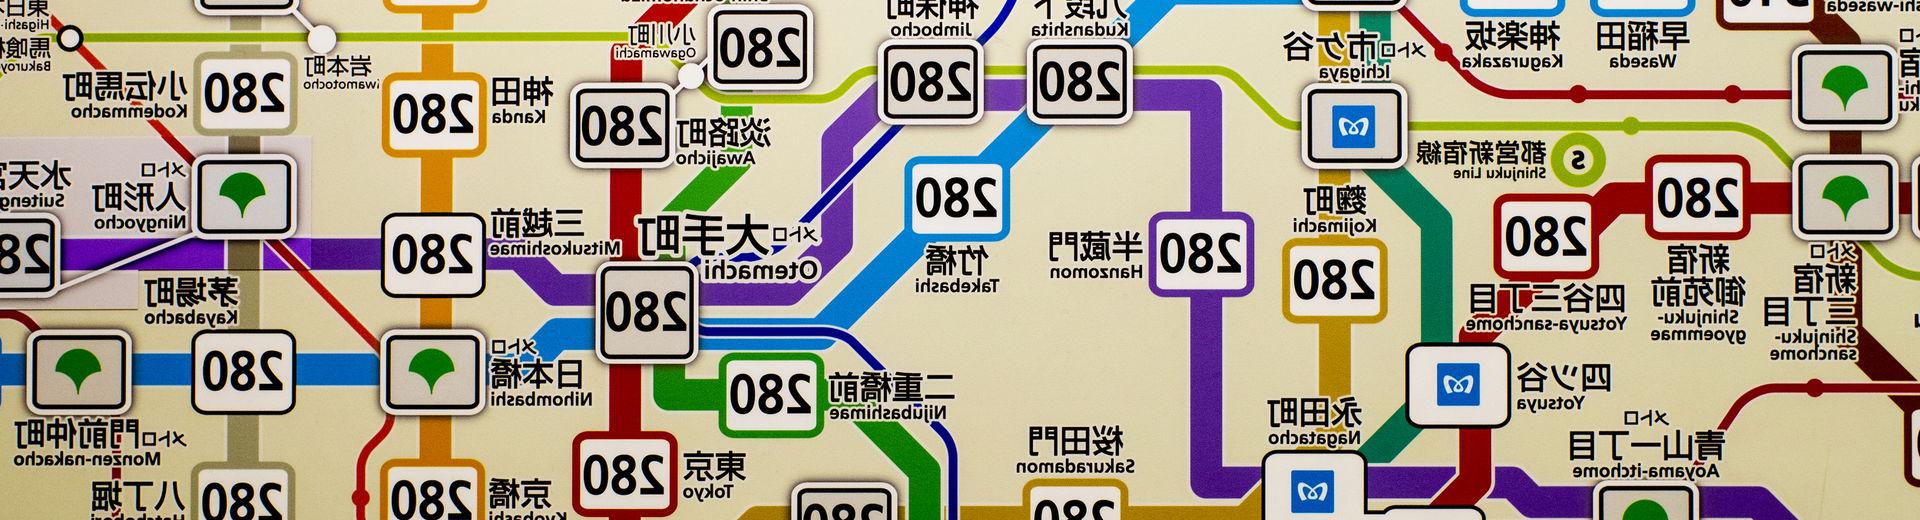 东京公共交通系统的地图.